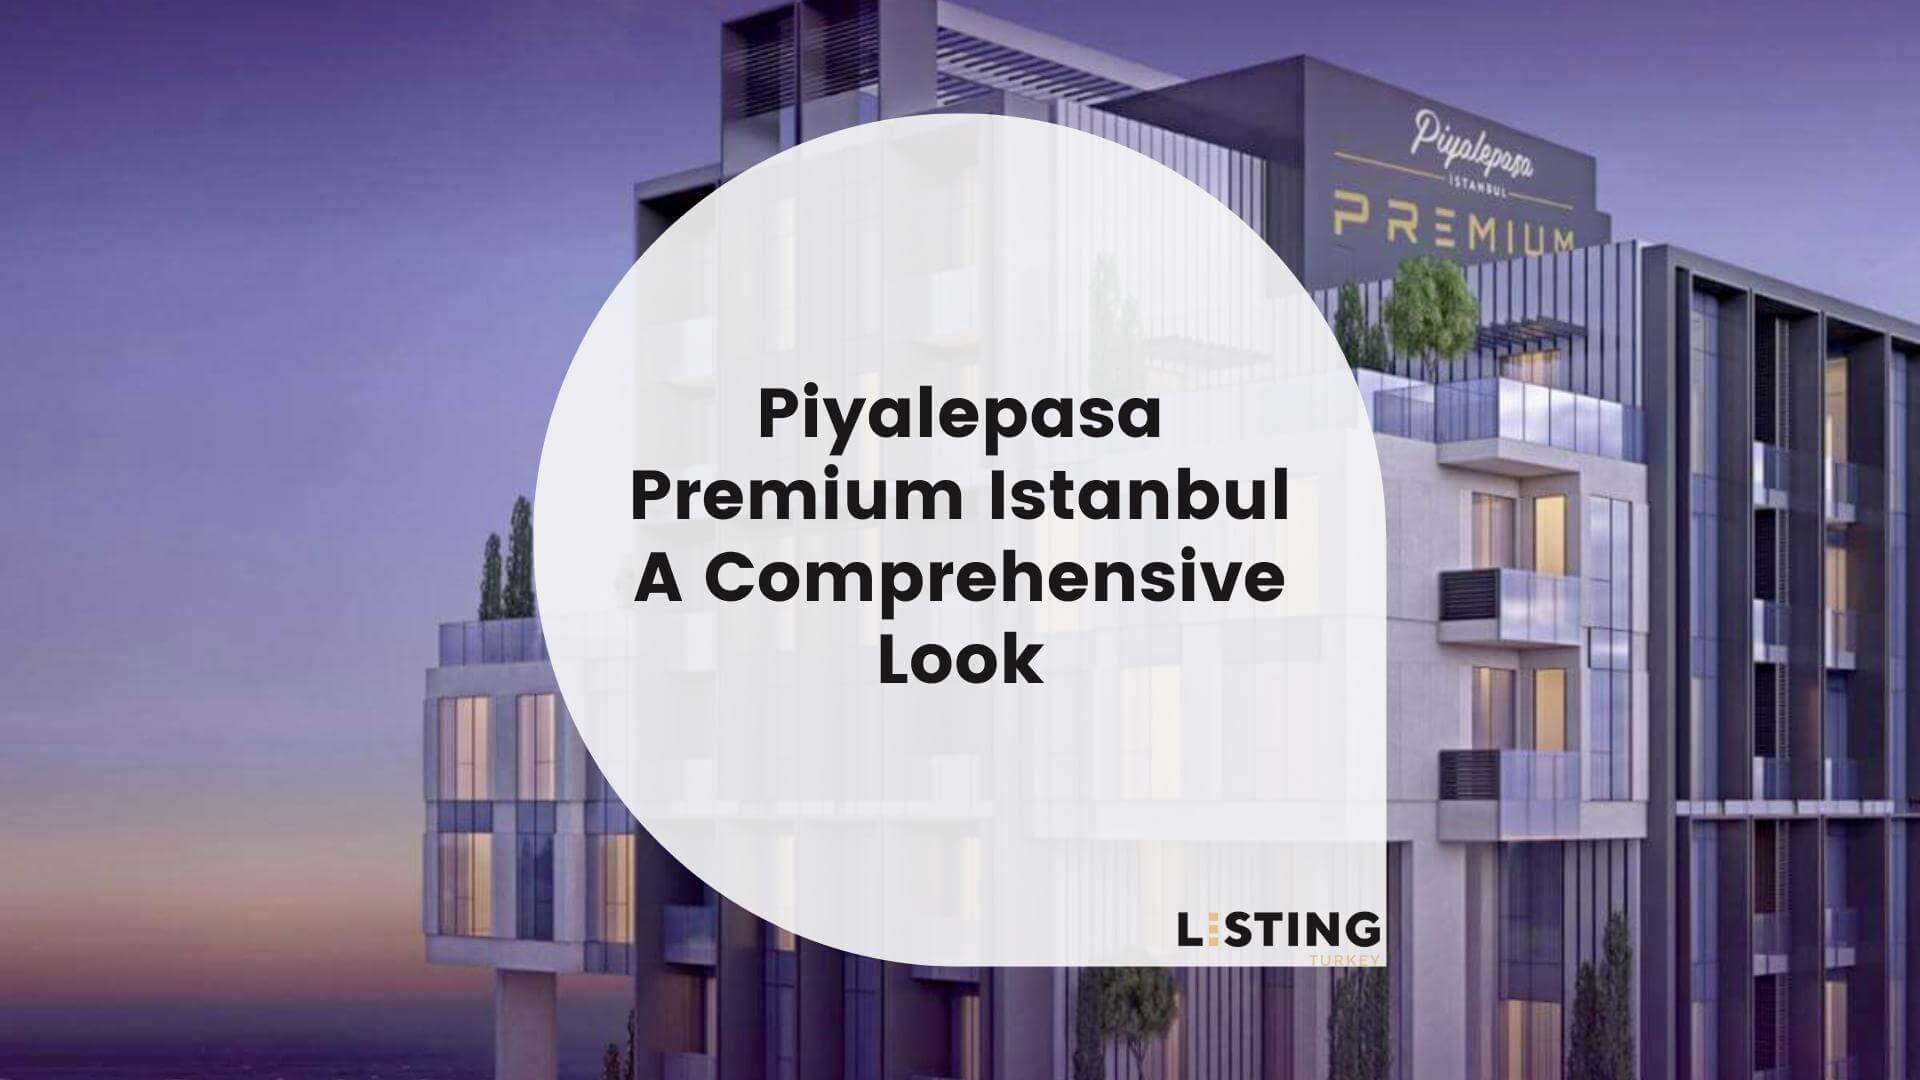 Piyalepasa Premium